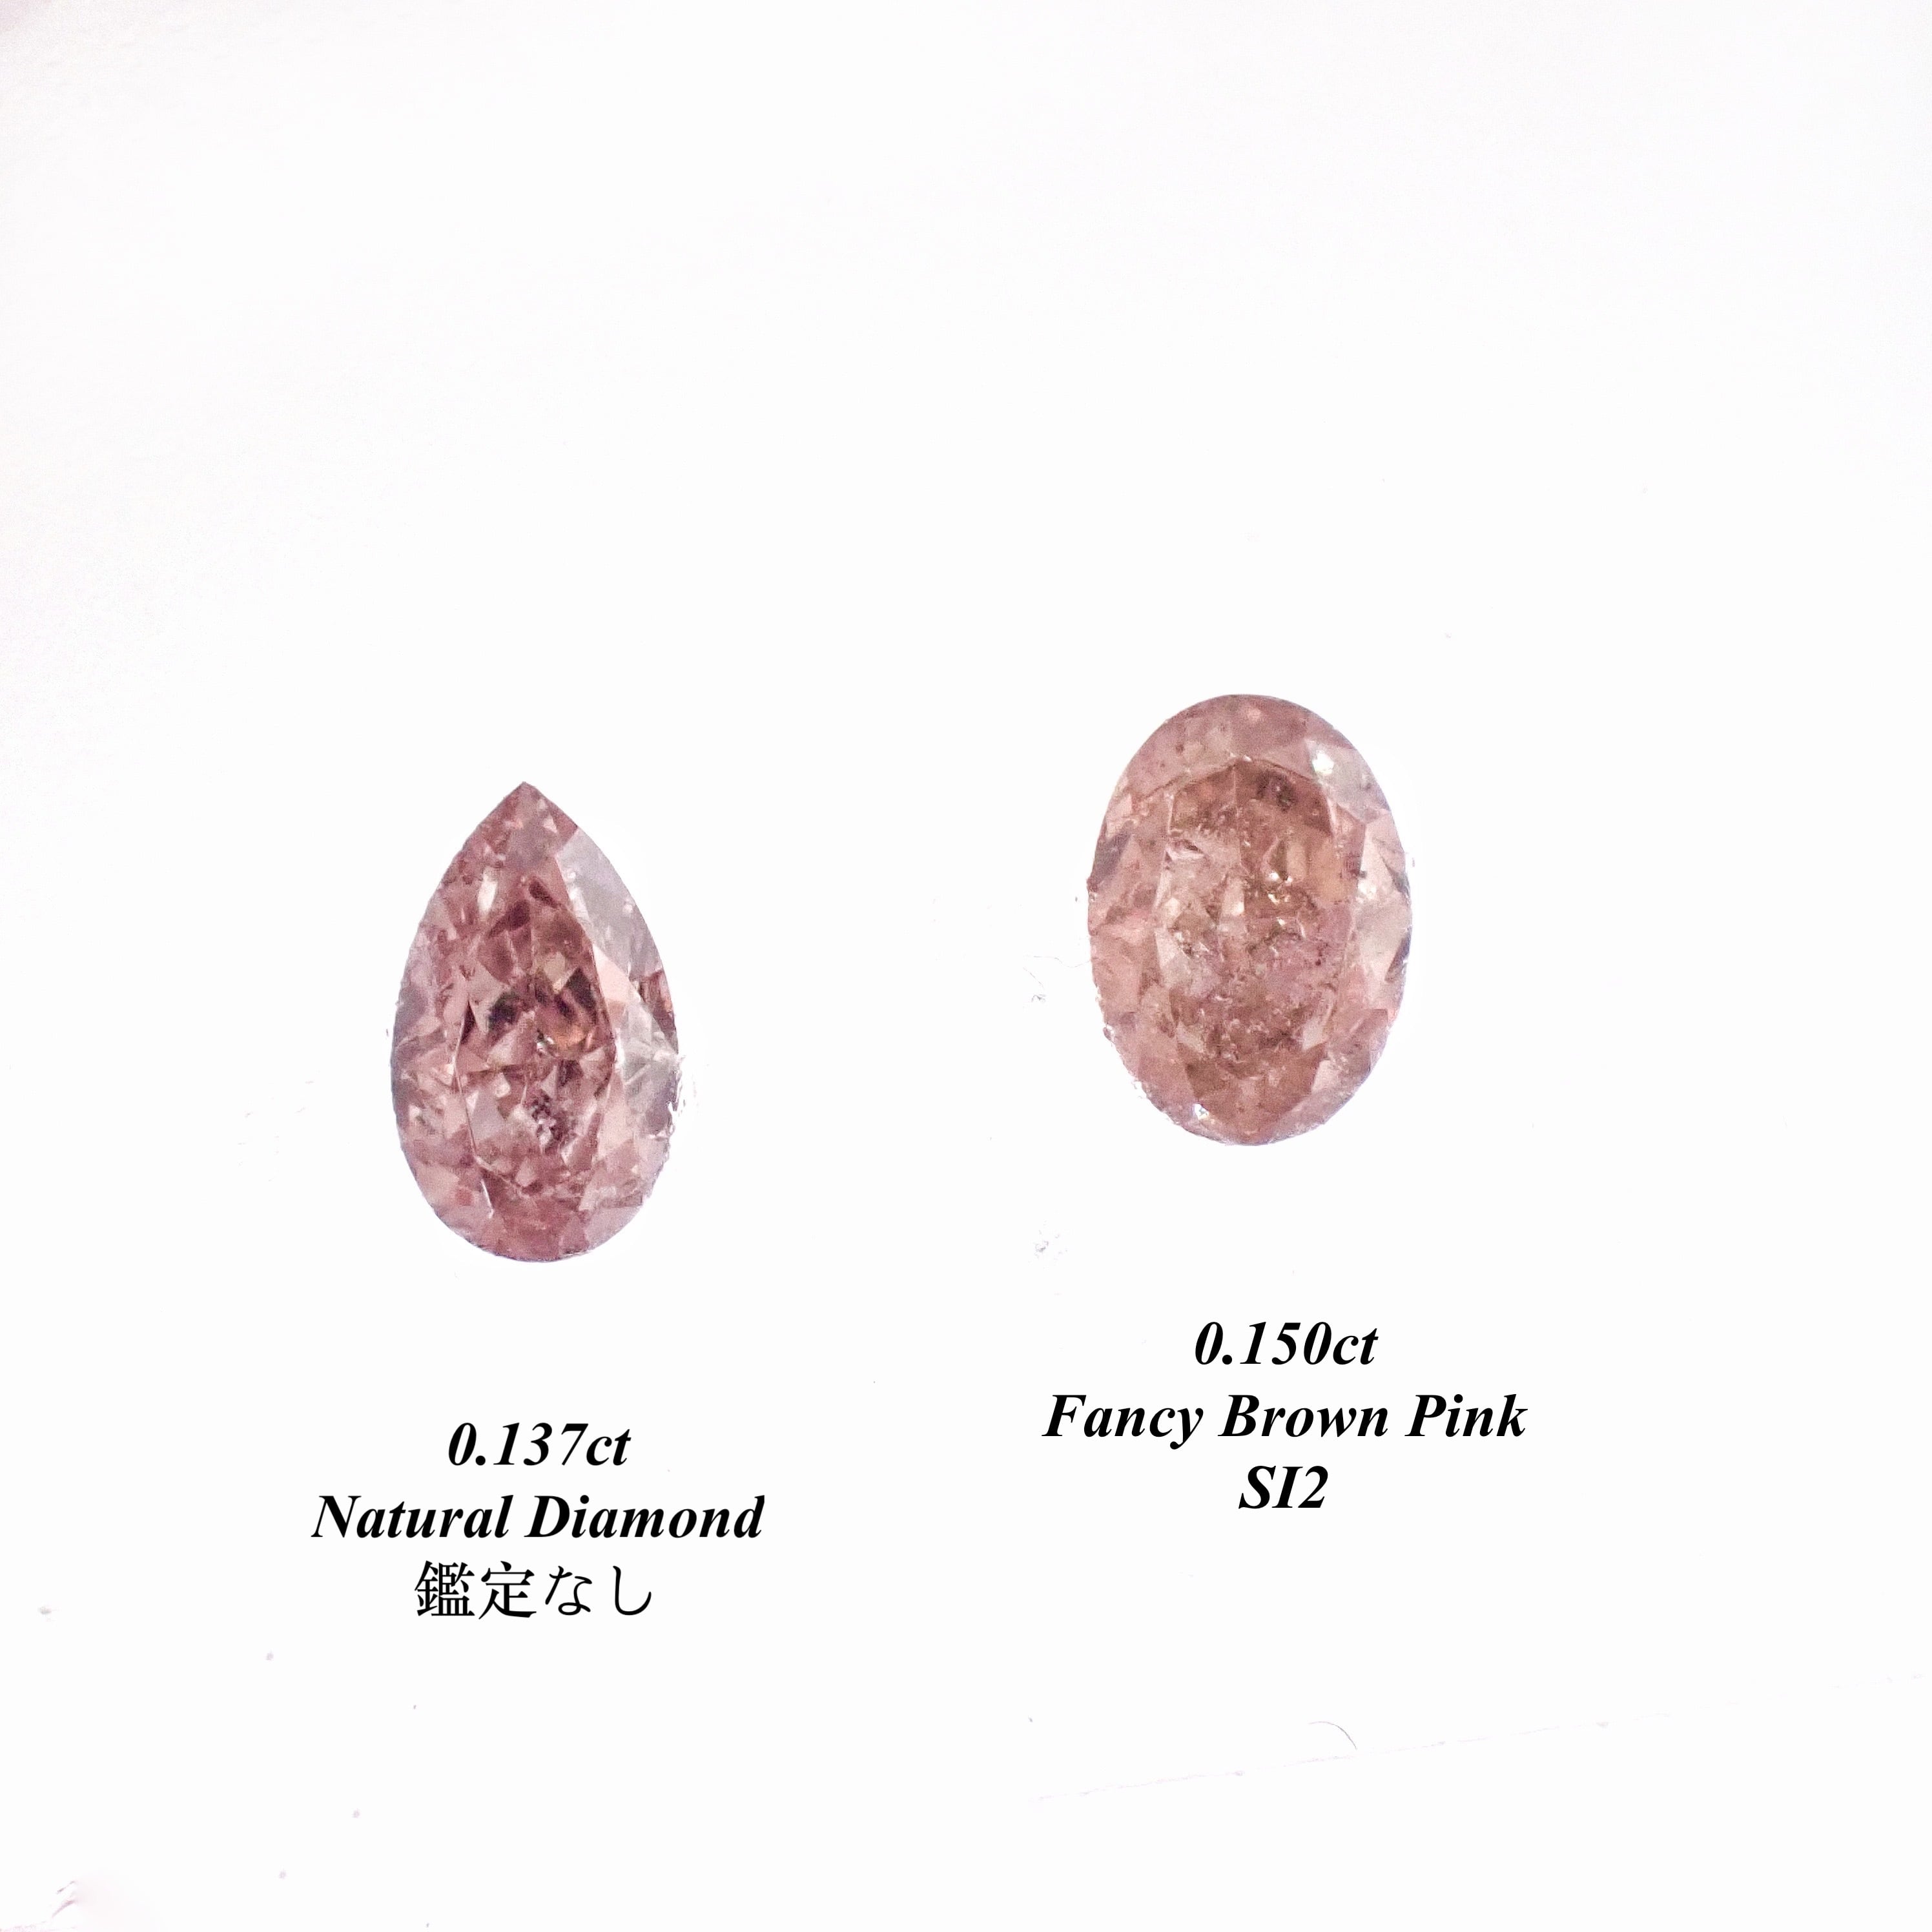 ファンシー ピンク ダイヤ ルース 裸石 天然 Natural Fancy Pink Diamond